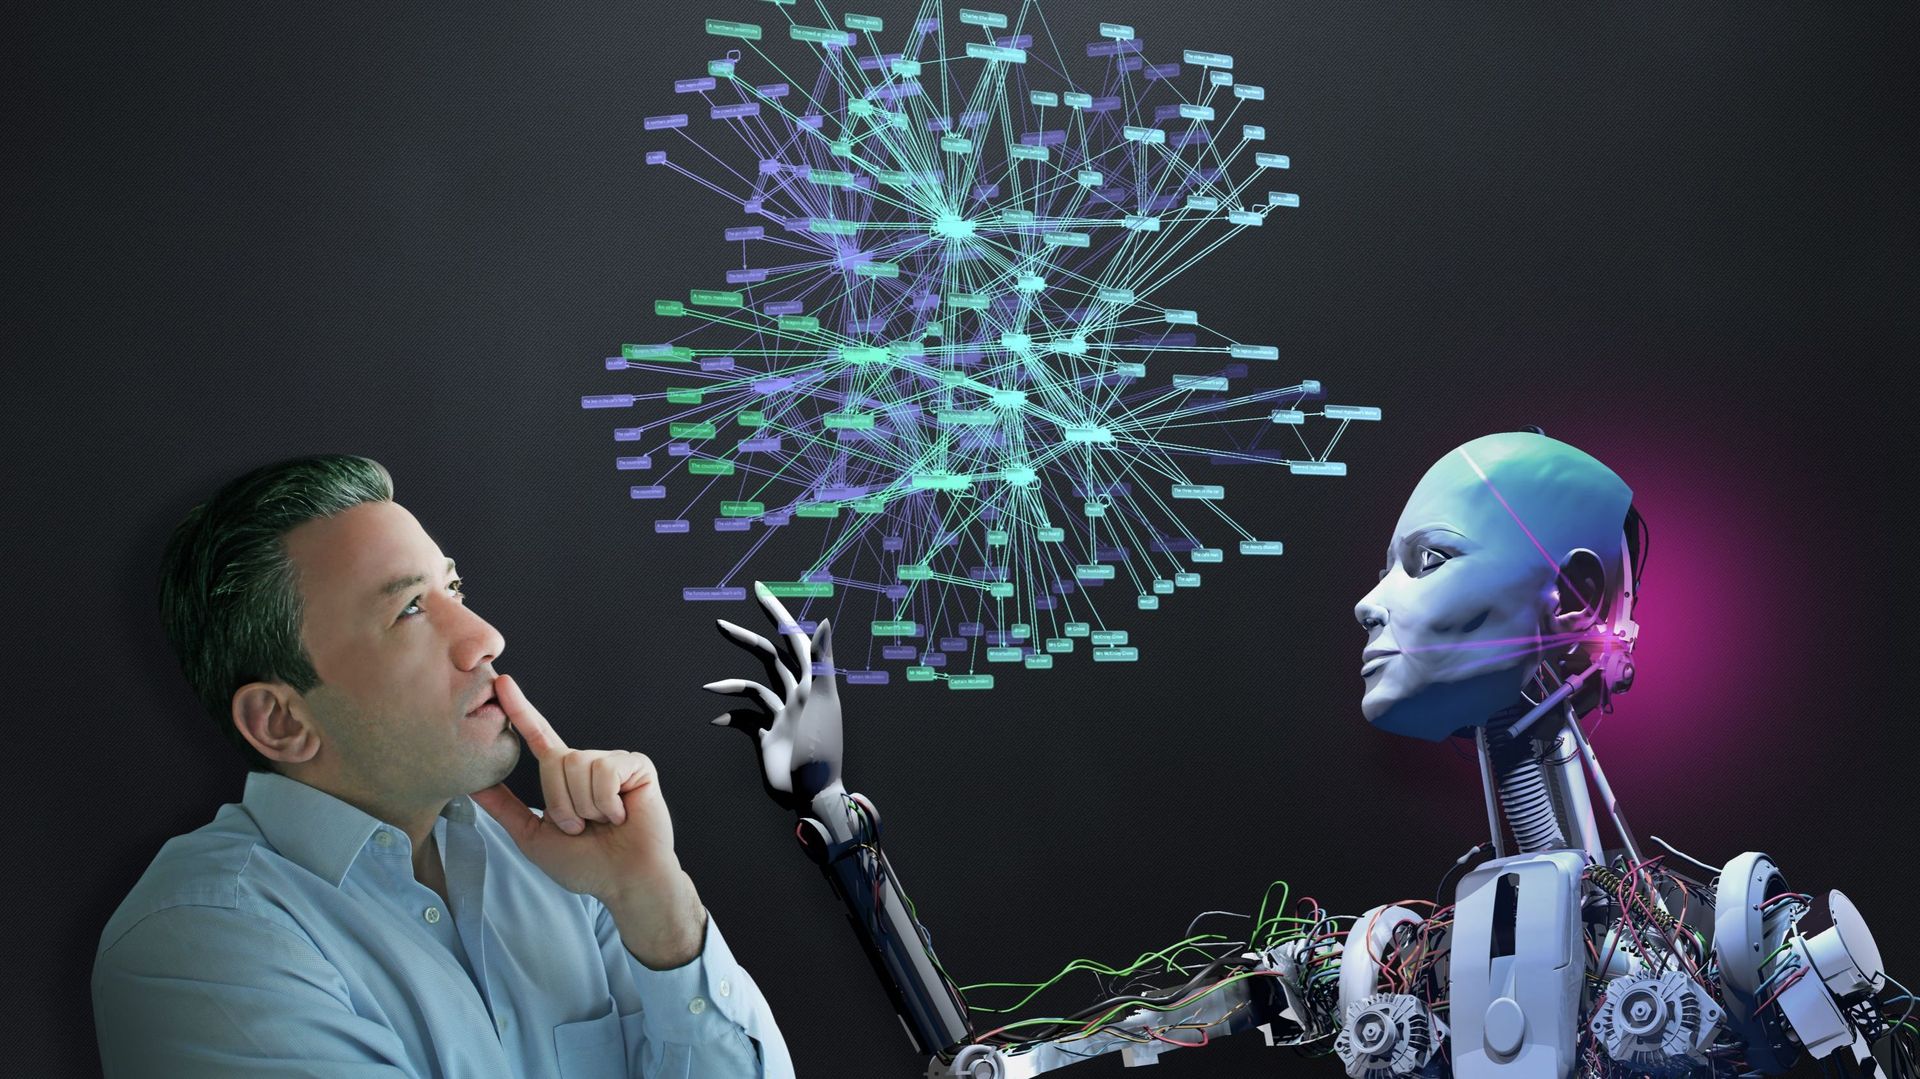 Intelligence artificielle : discussion sidérante avec le nouveau robot d’OpenAI. Image d’illustration.